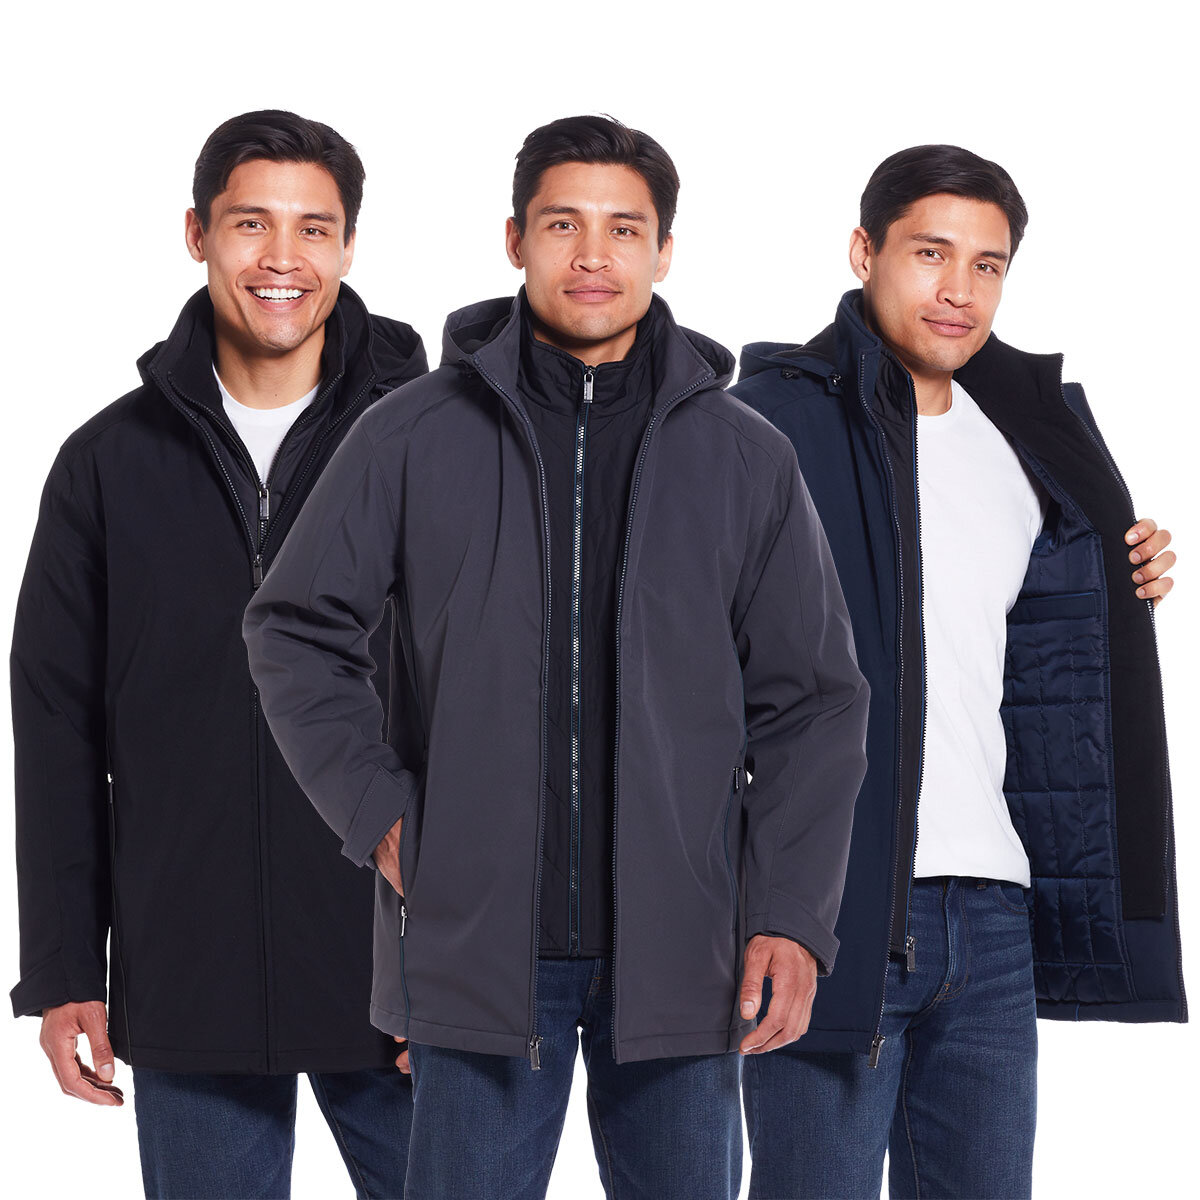 Jackets & Outerwear – Weatherproof®